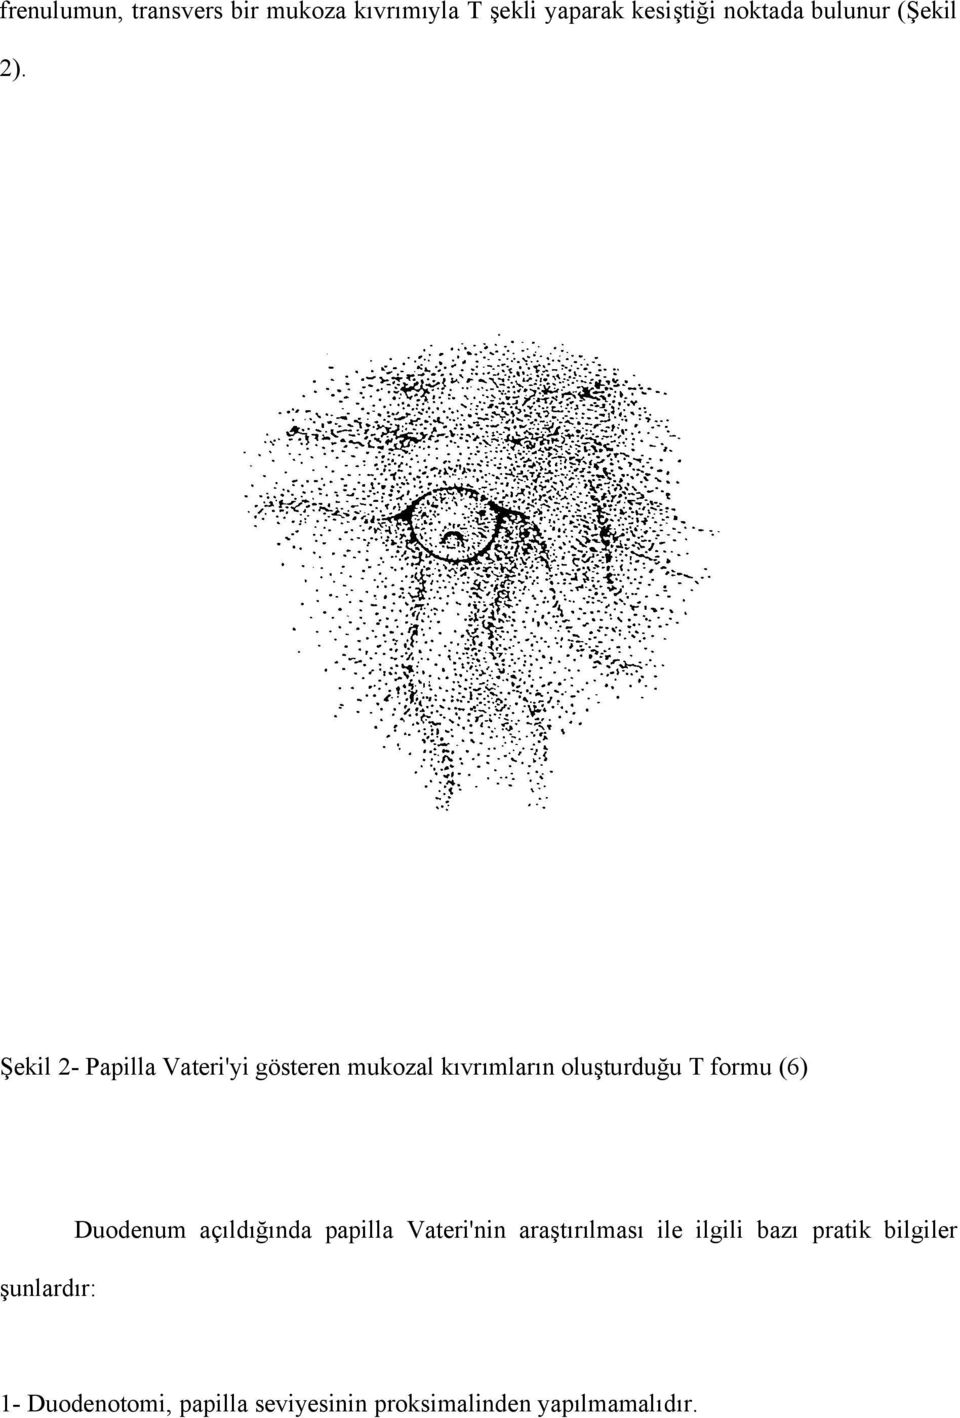 Şekil 2- Papilla Vateri'yi gösteren mukozal kıvrımların oluşturduğu T formu (6)